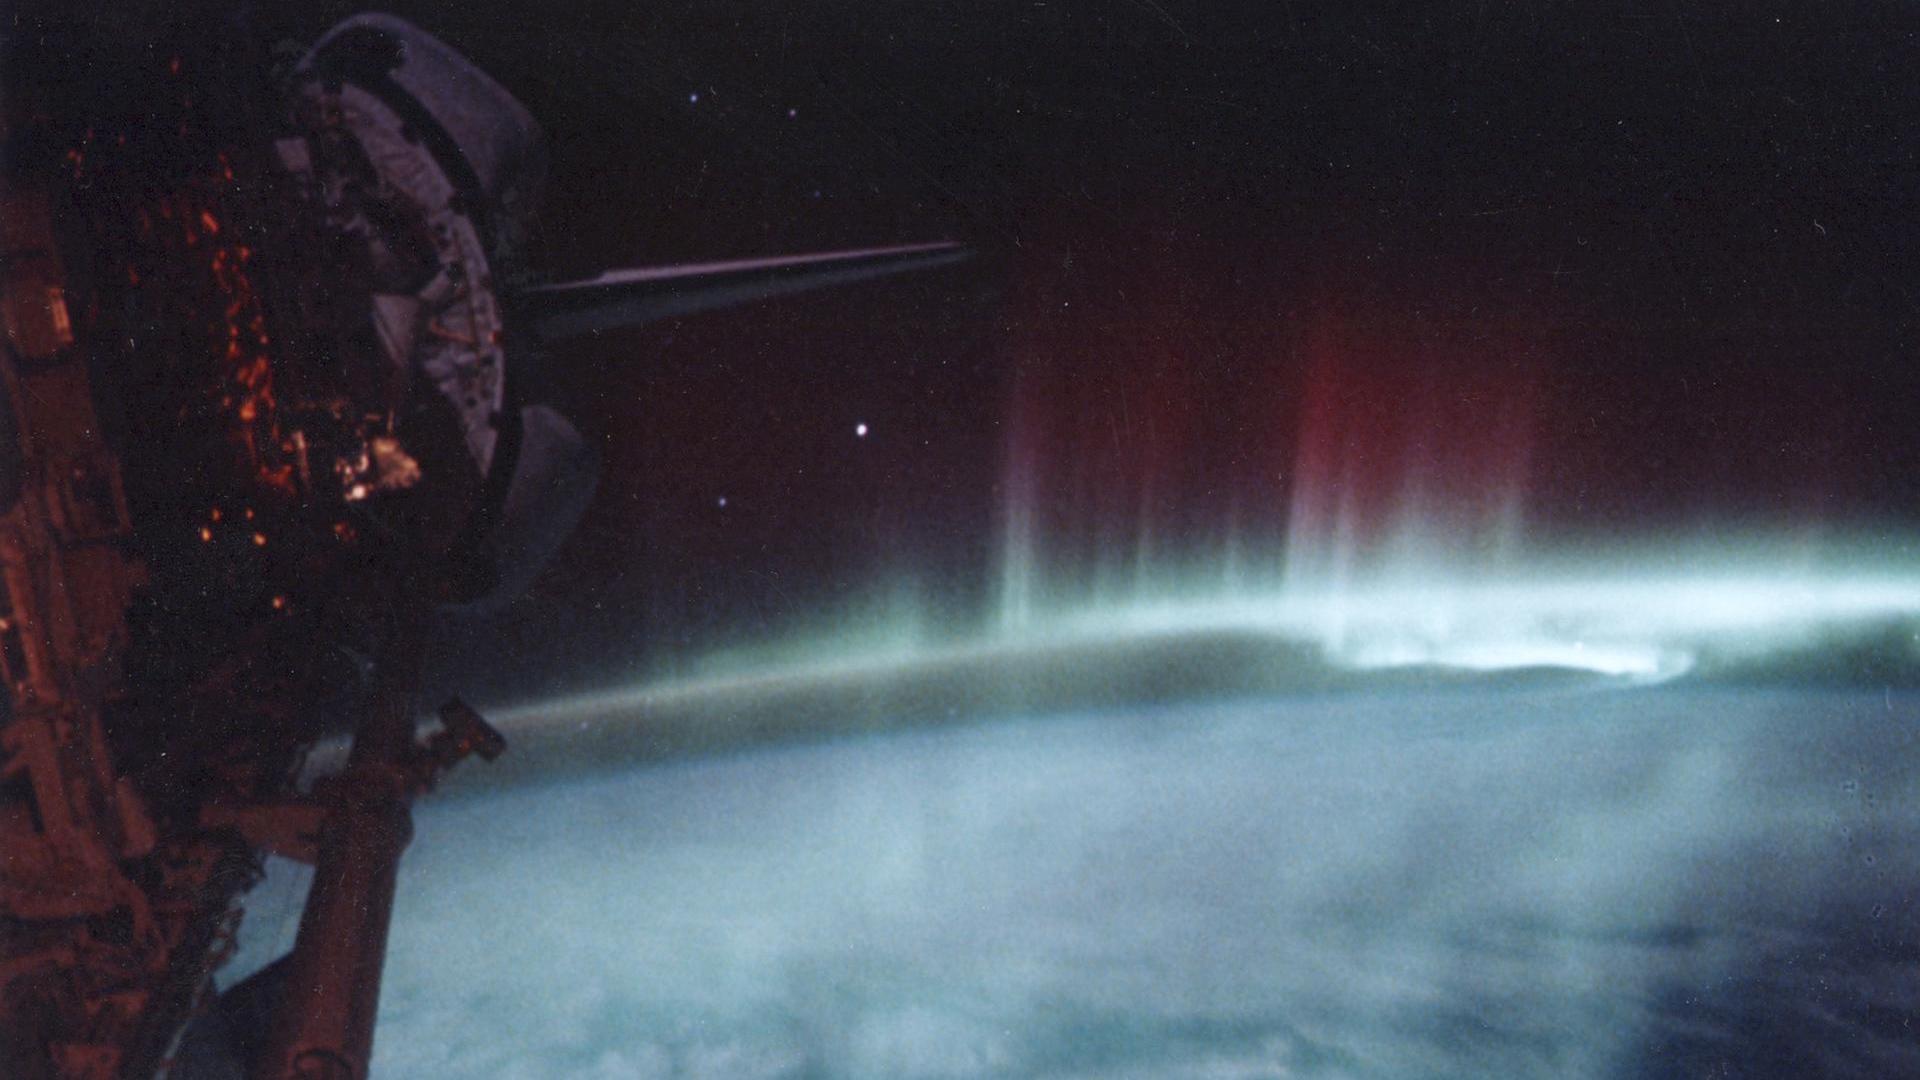 фотография зелено-красного полярного сияния, сделанная во время открытия космического челнока.